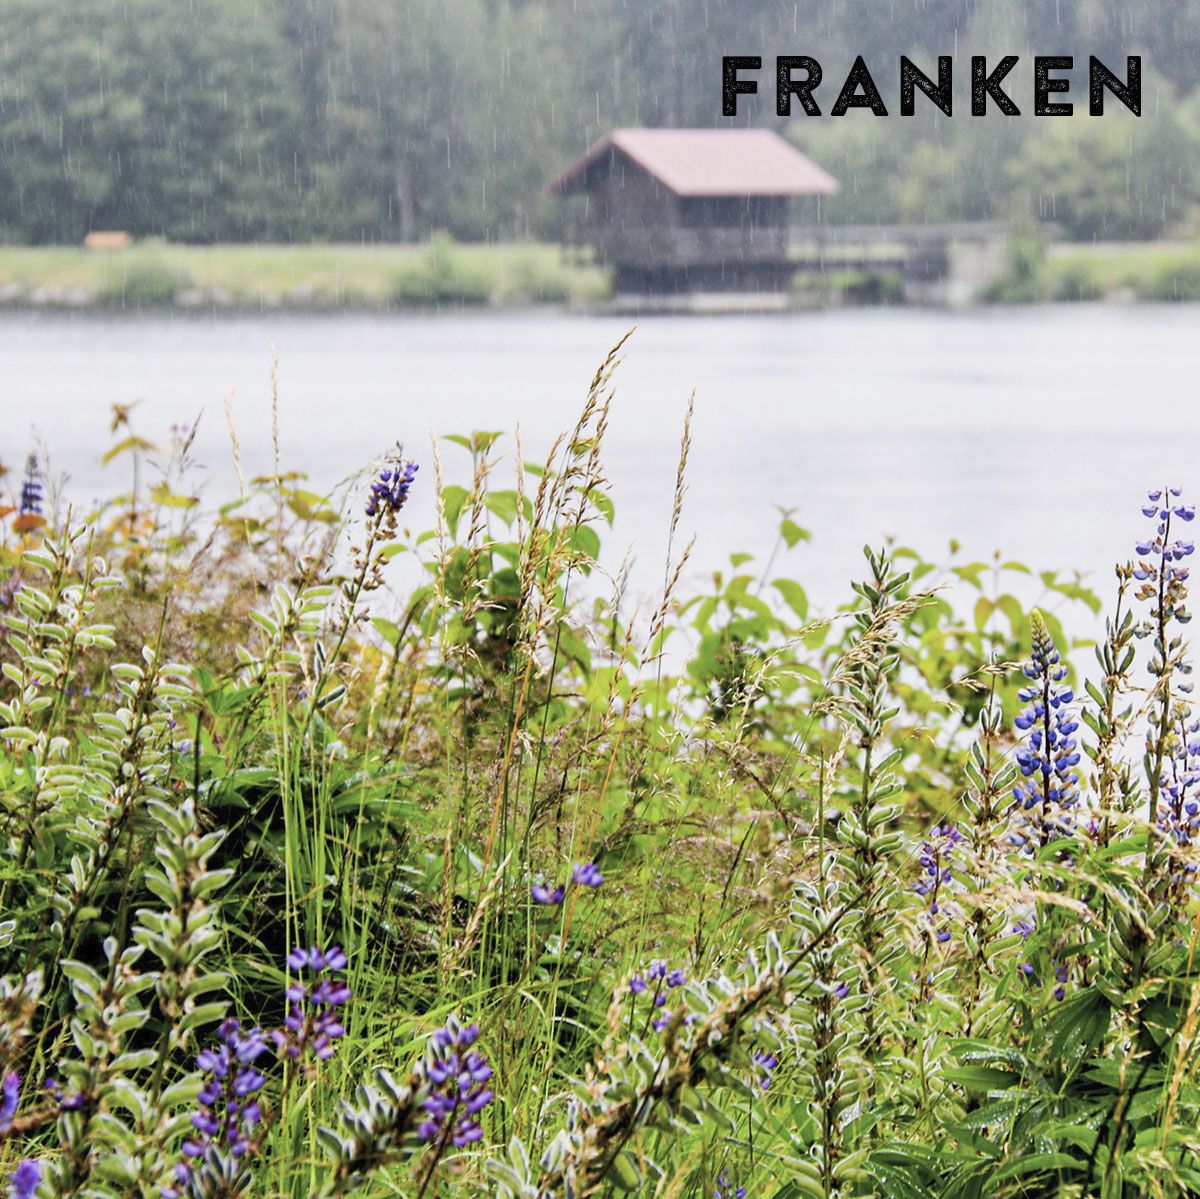 Das Foto zeigt einen See mit einer Bootshütte im Hintergrund und einer blühenden Wiese im Vordergrund.